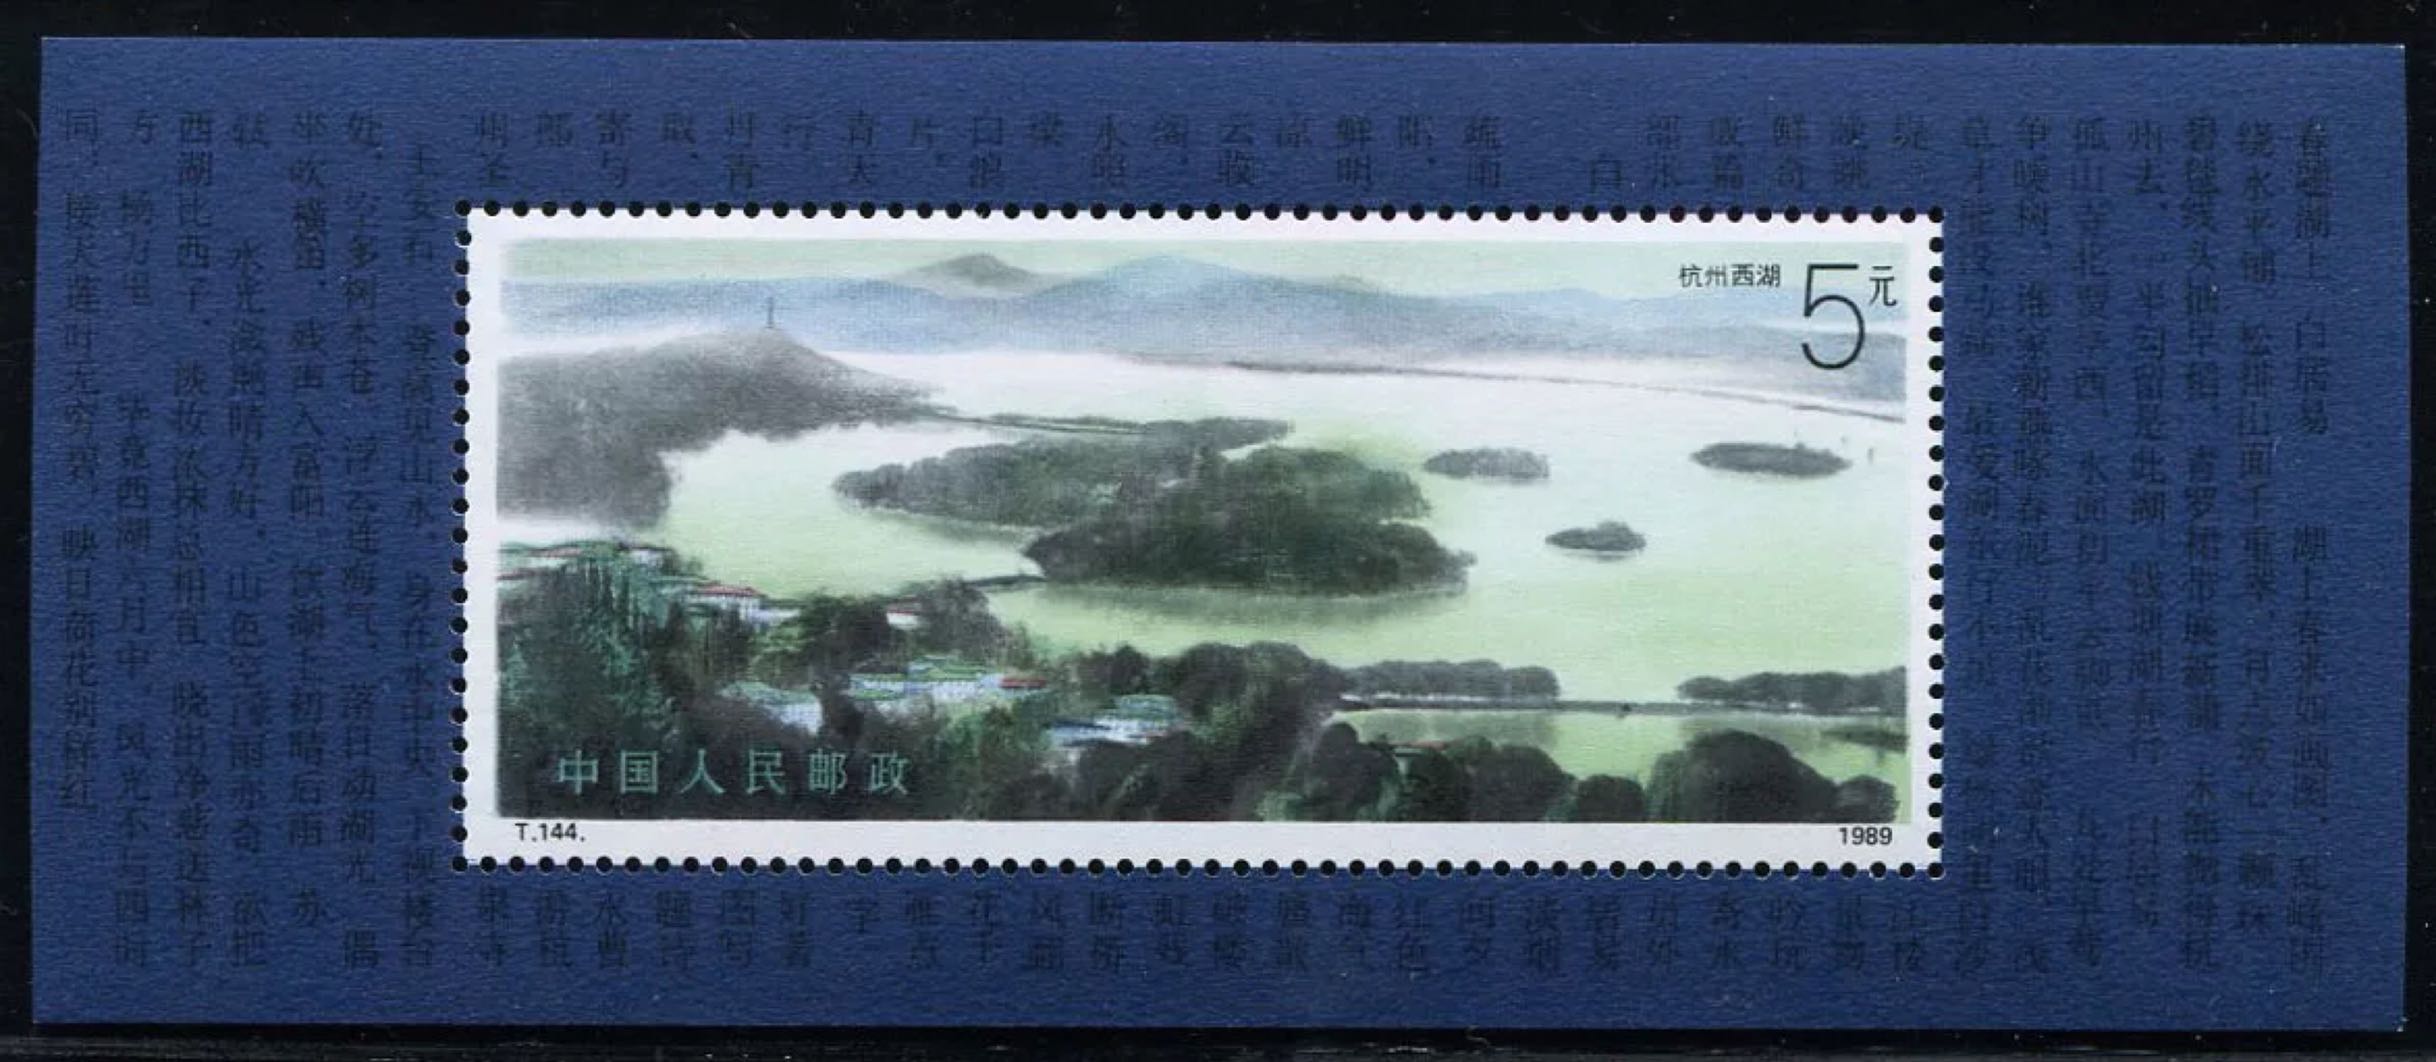 t144邮票